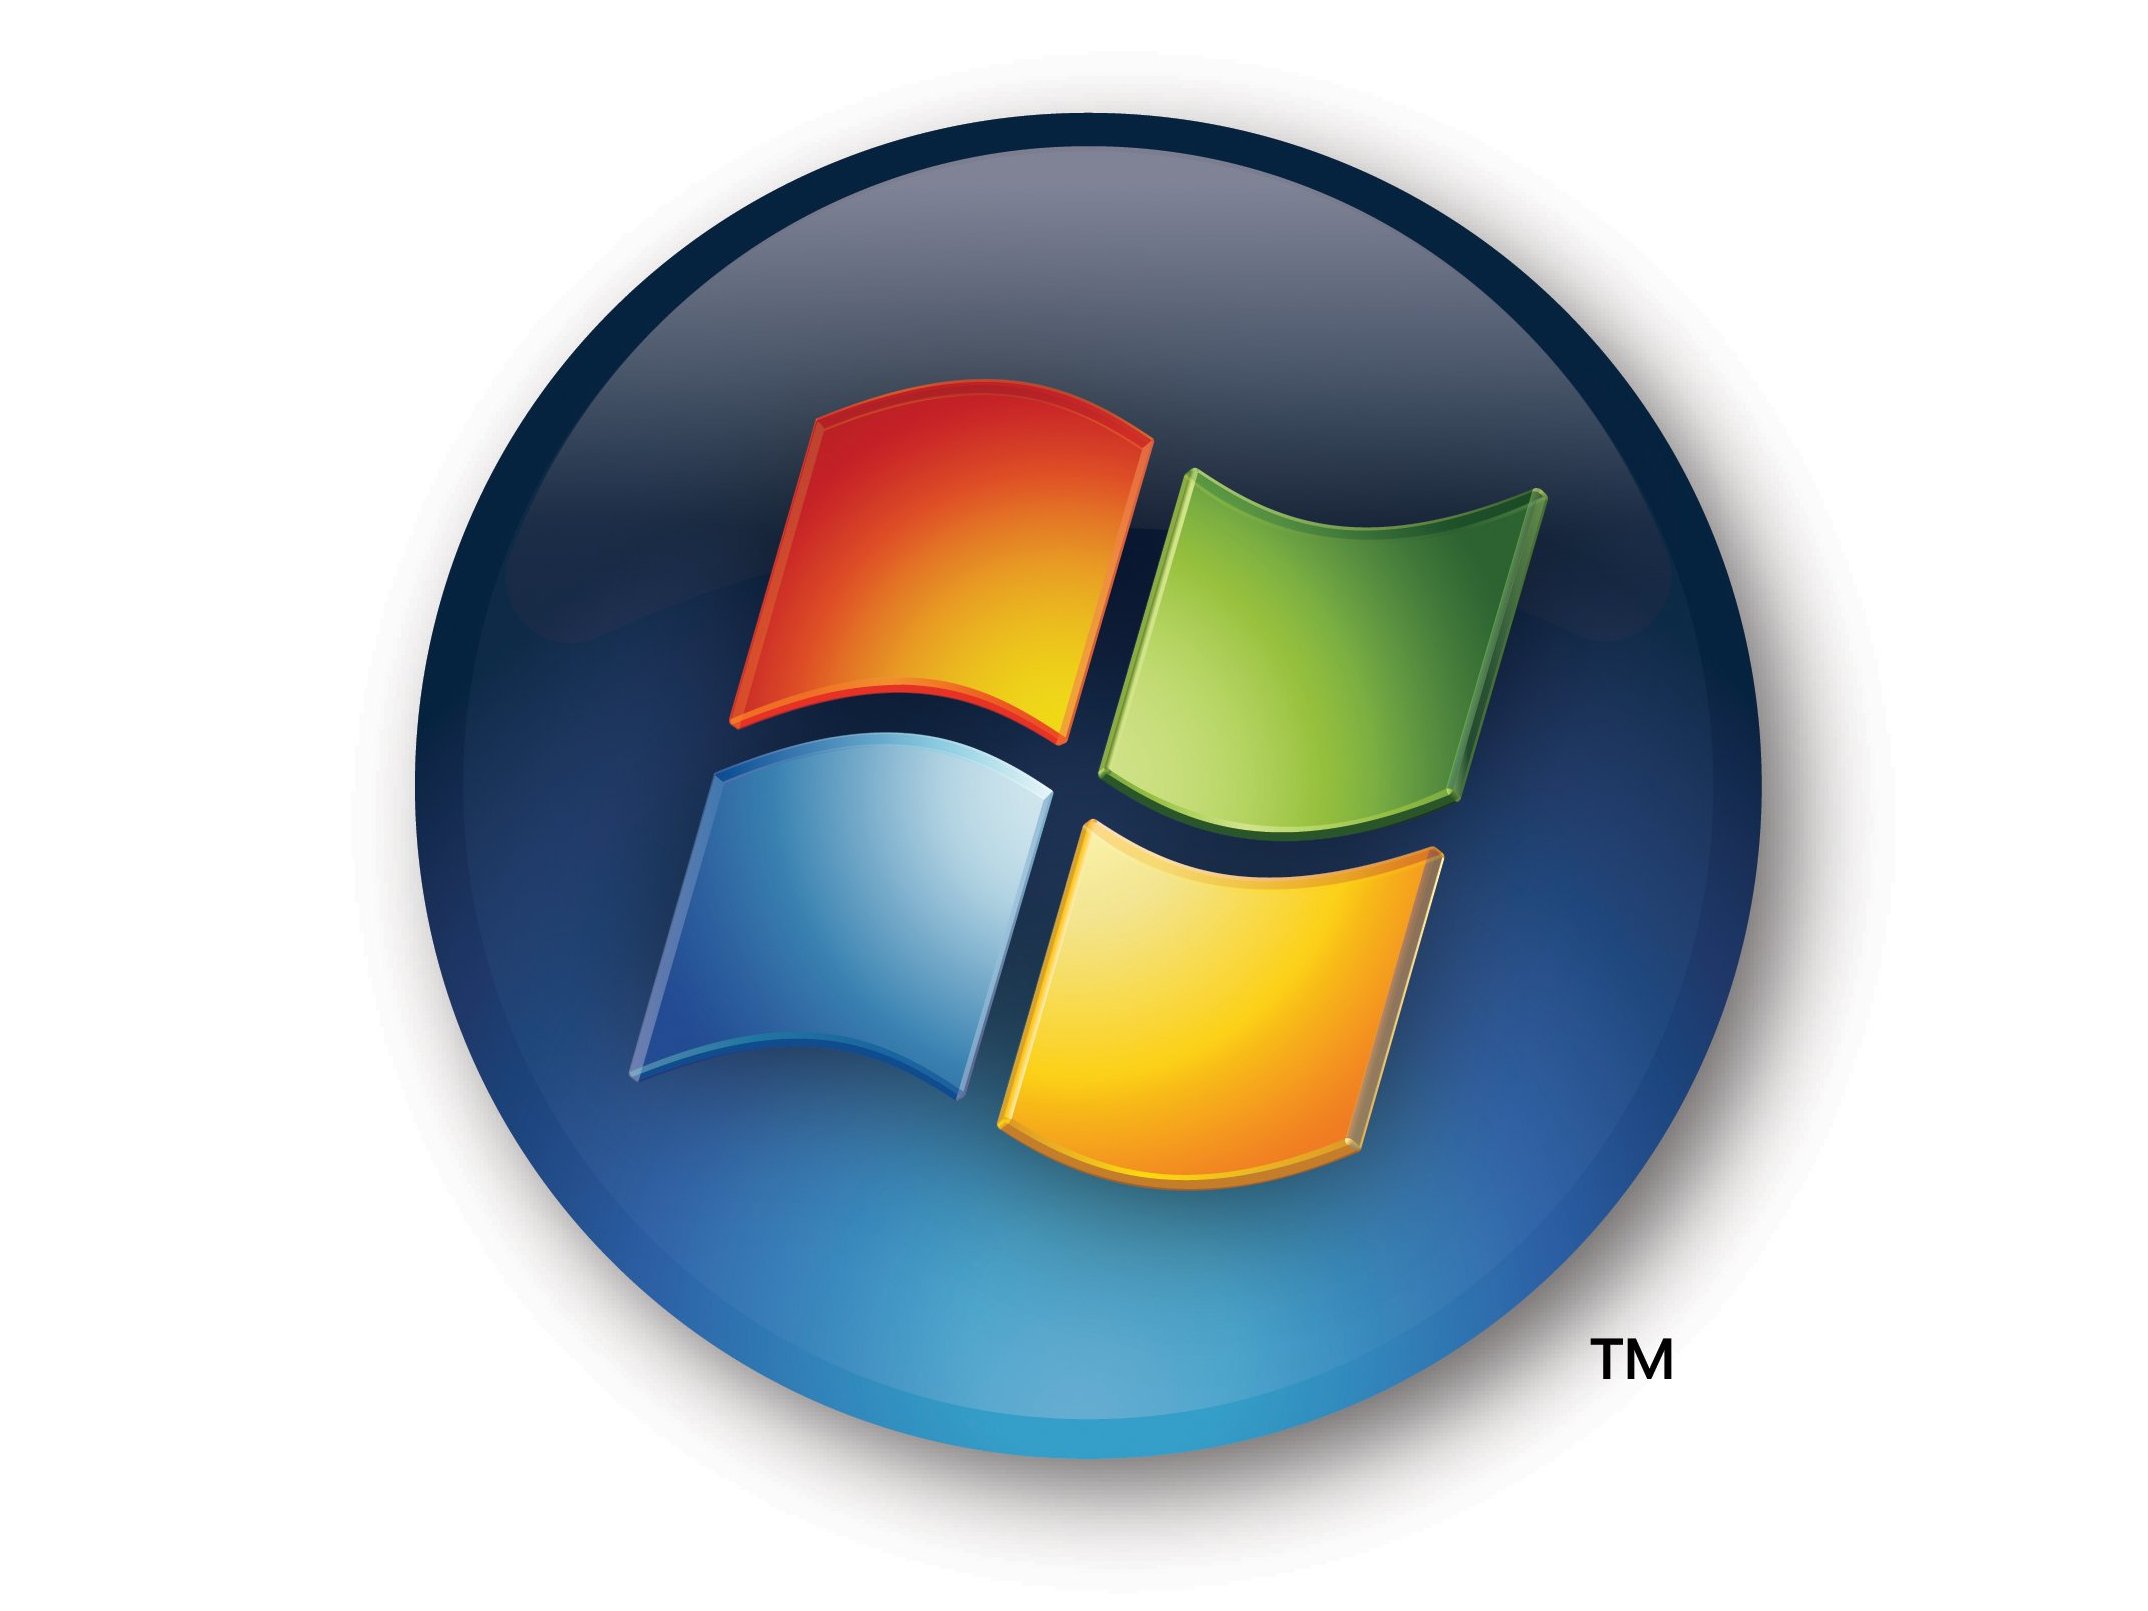 Windows 7 icons. Кнопка пуск Windows 7. ОС виндовс лого. Значок пуск. Логотип Windows 7.